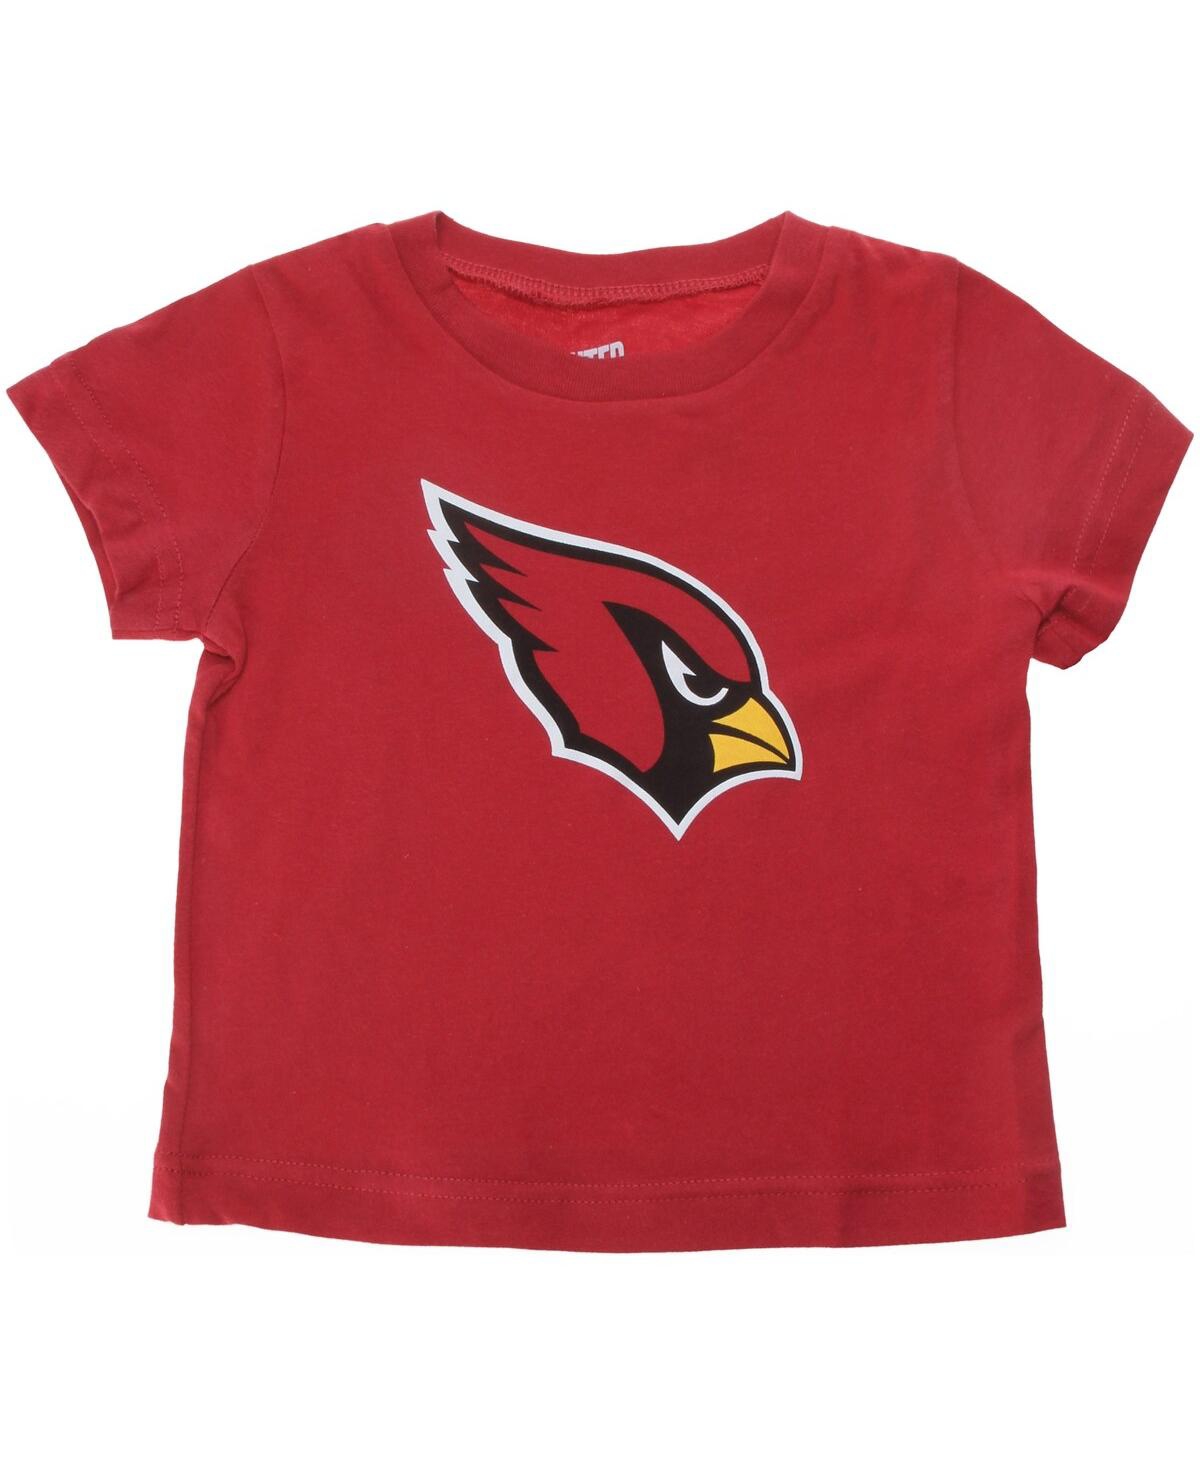 Outerstuff Babies' Infant Boys And Girls Cardinal Arizona Cardinals Team Logo T-shirt